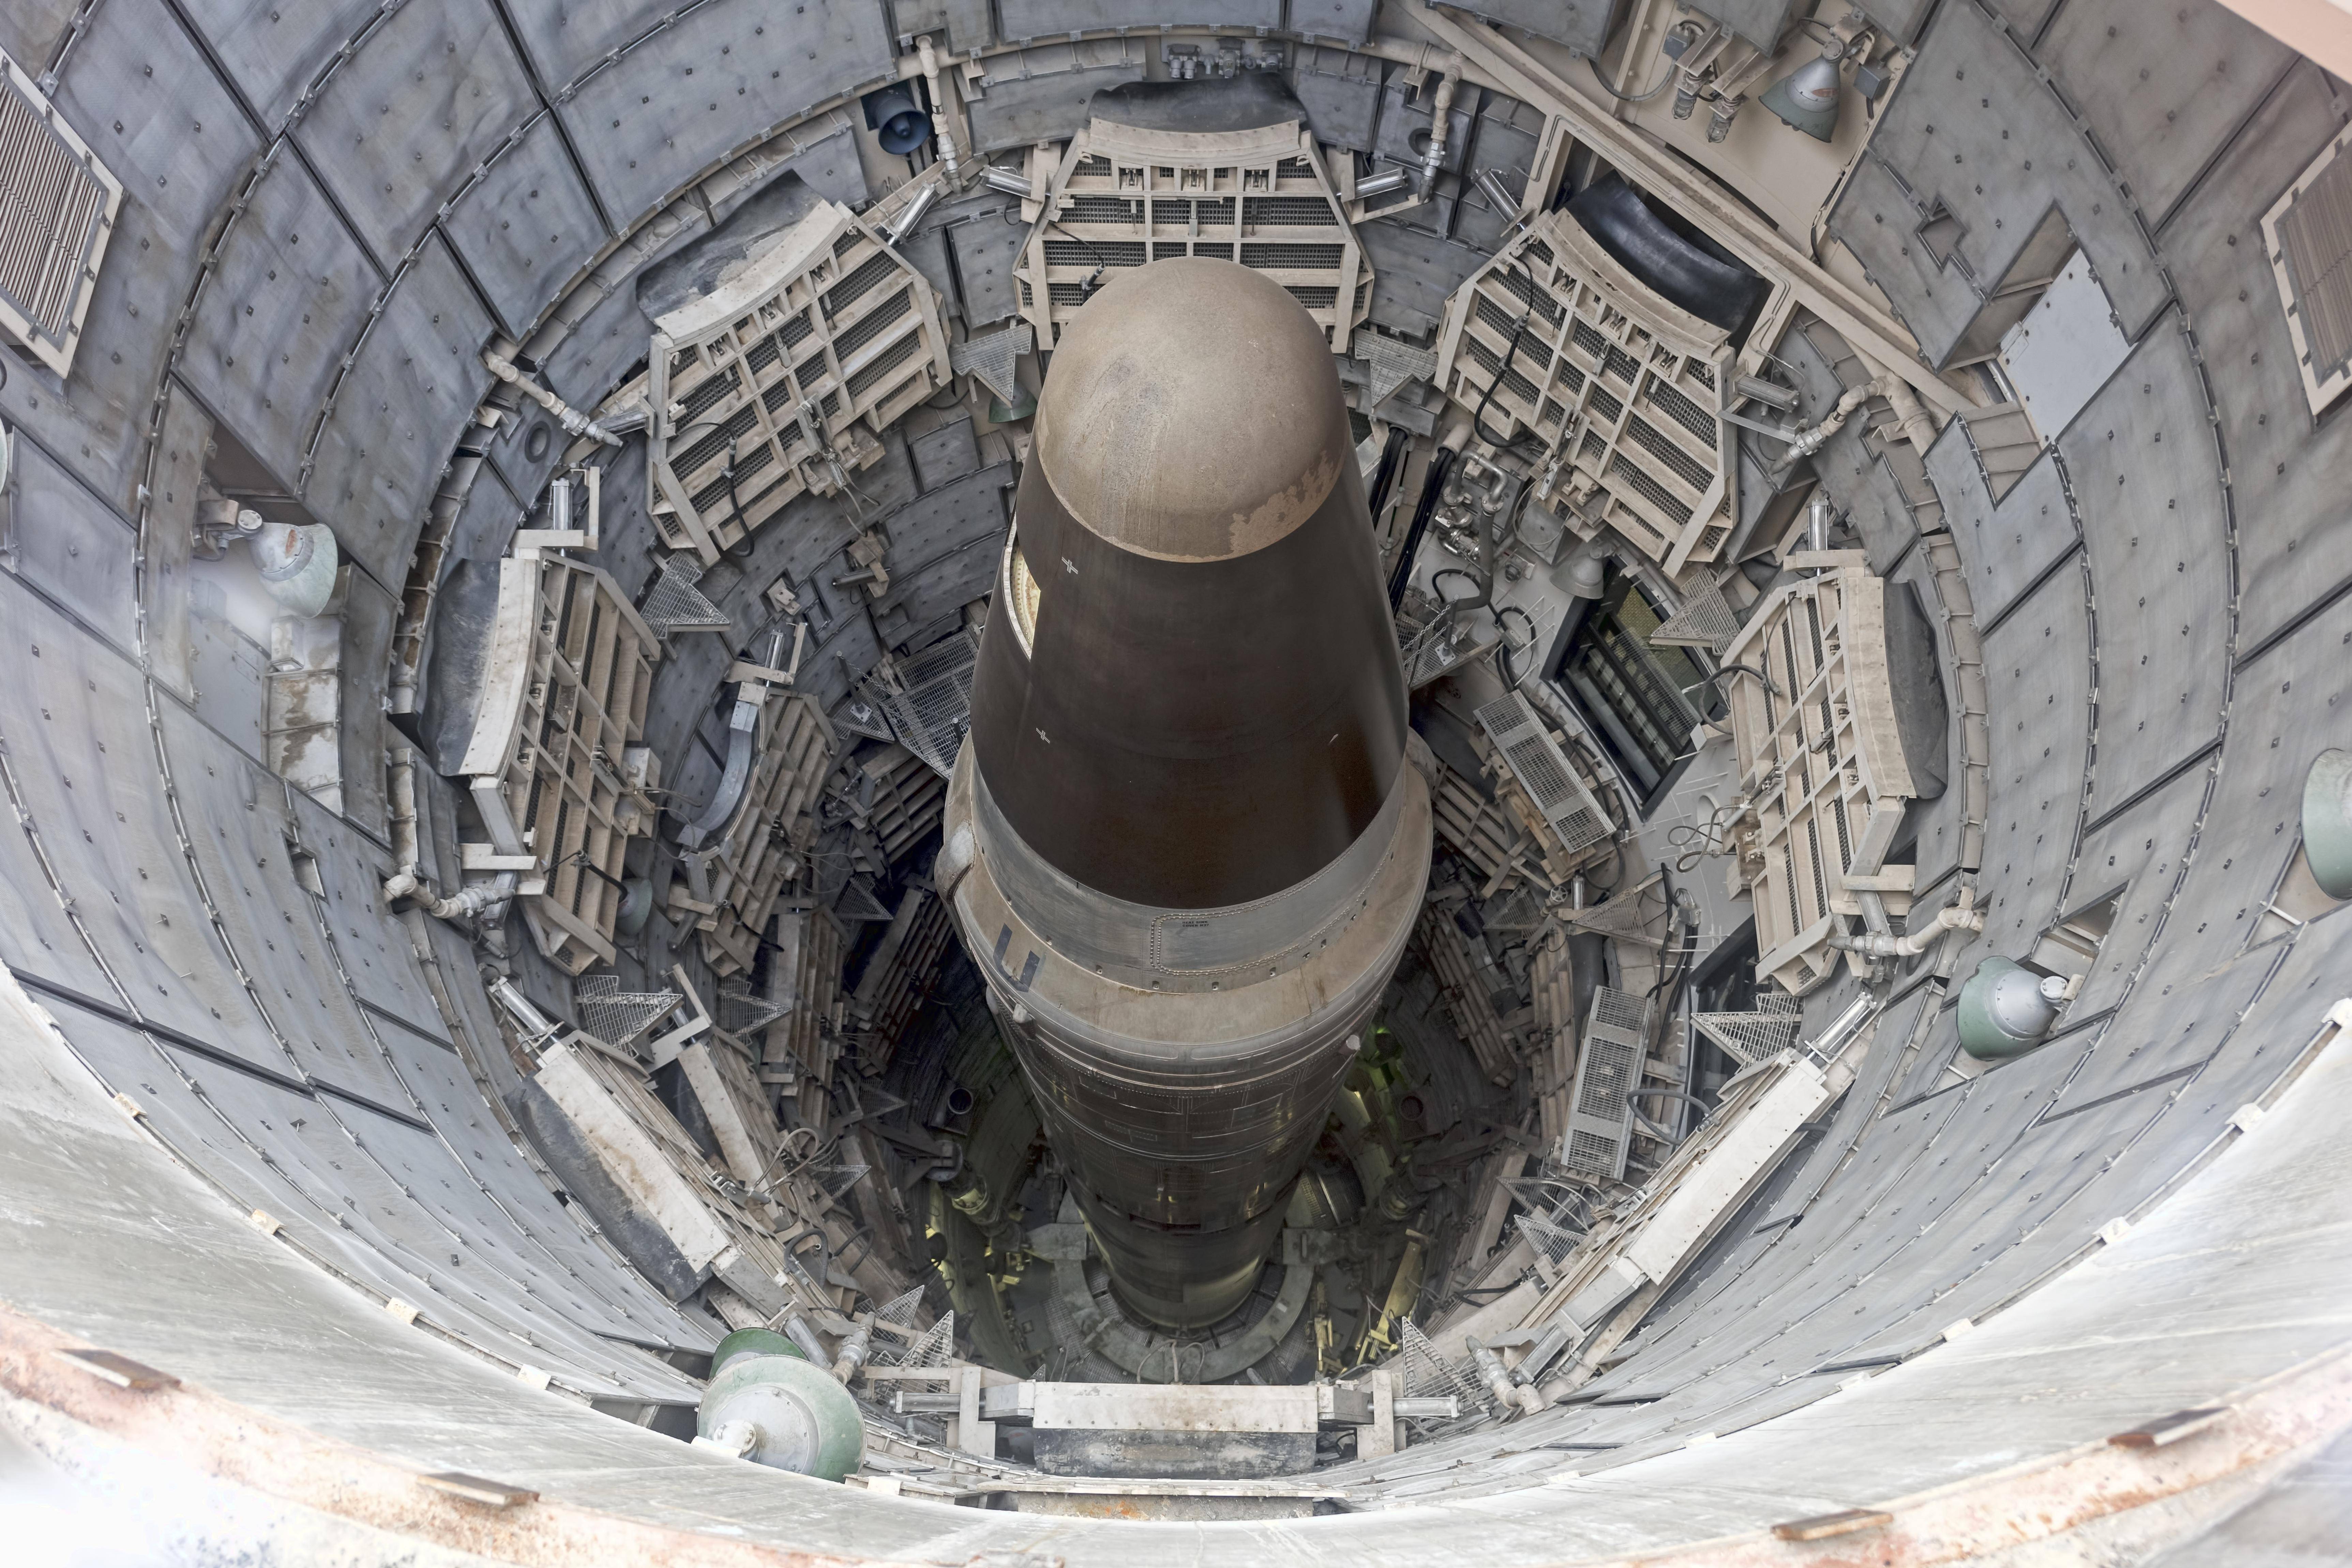 Atomrakete im Silo: Atomare Abschreckung ist keine Garantie für echte gemeinsame Sicherheit.